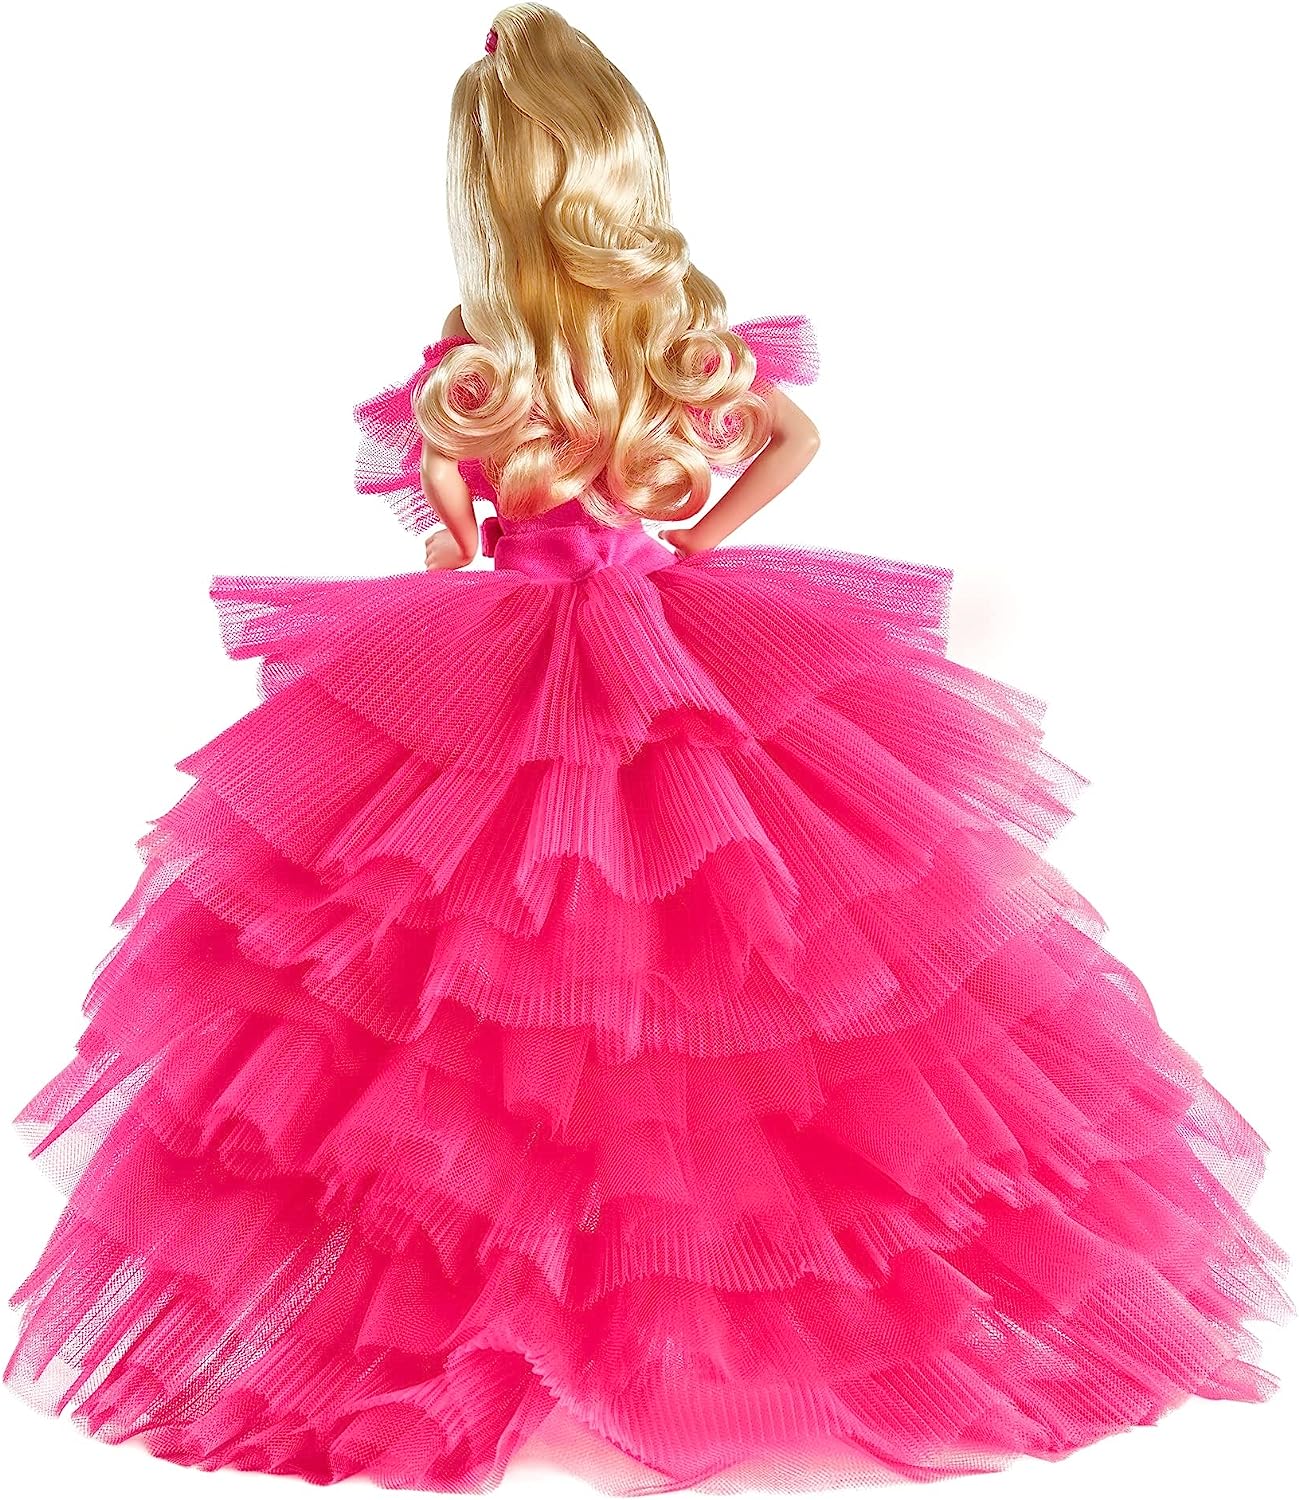 オフライン販売 【送料込】バービー ピンクプレミア ピンクコレクションドール Barbie ぬいぐるみ